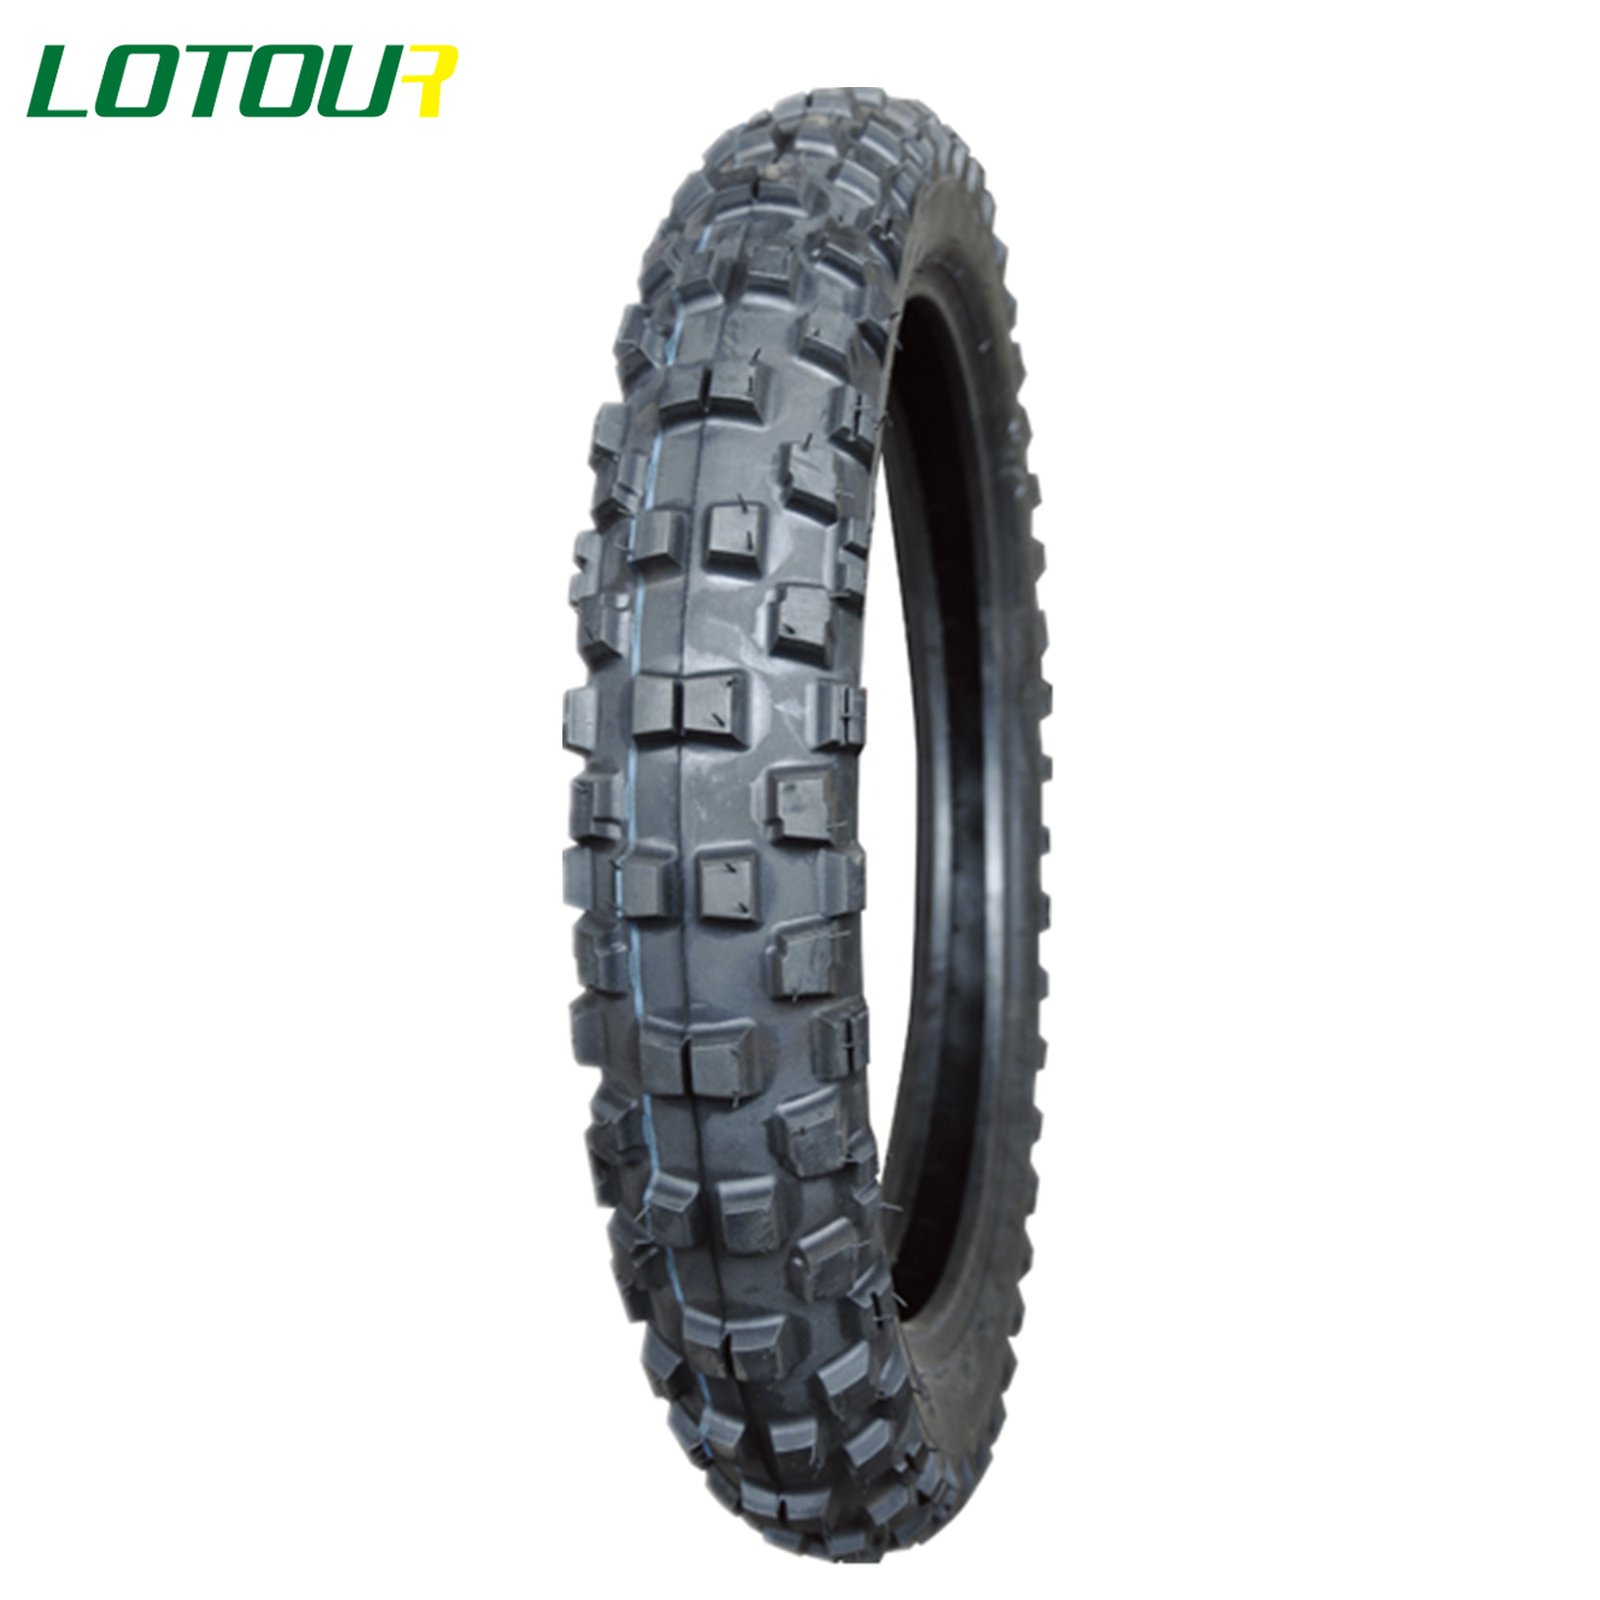 Lotour Tire M3068